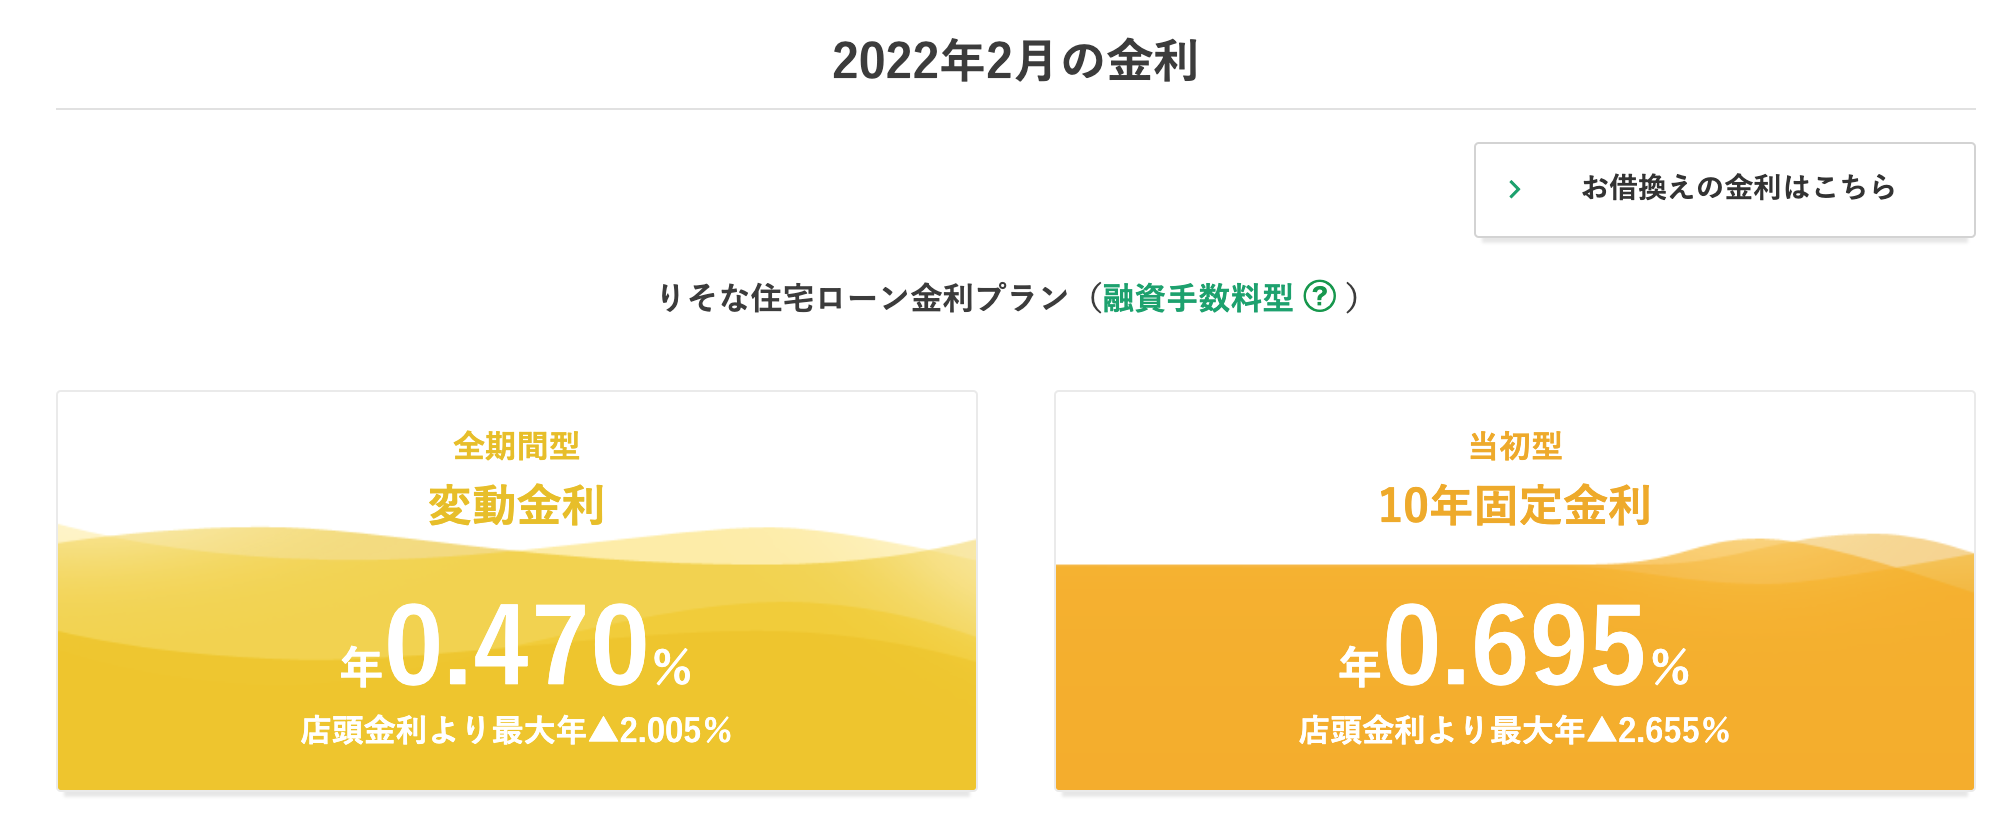 埼玉りそな銀行の2022年2月の住宅ローン金利